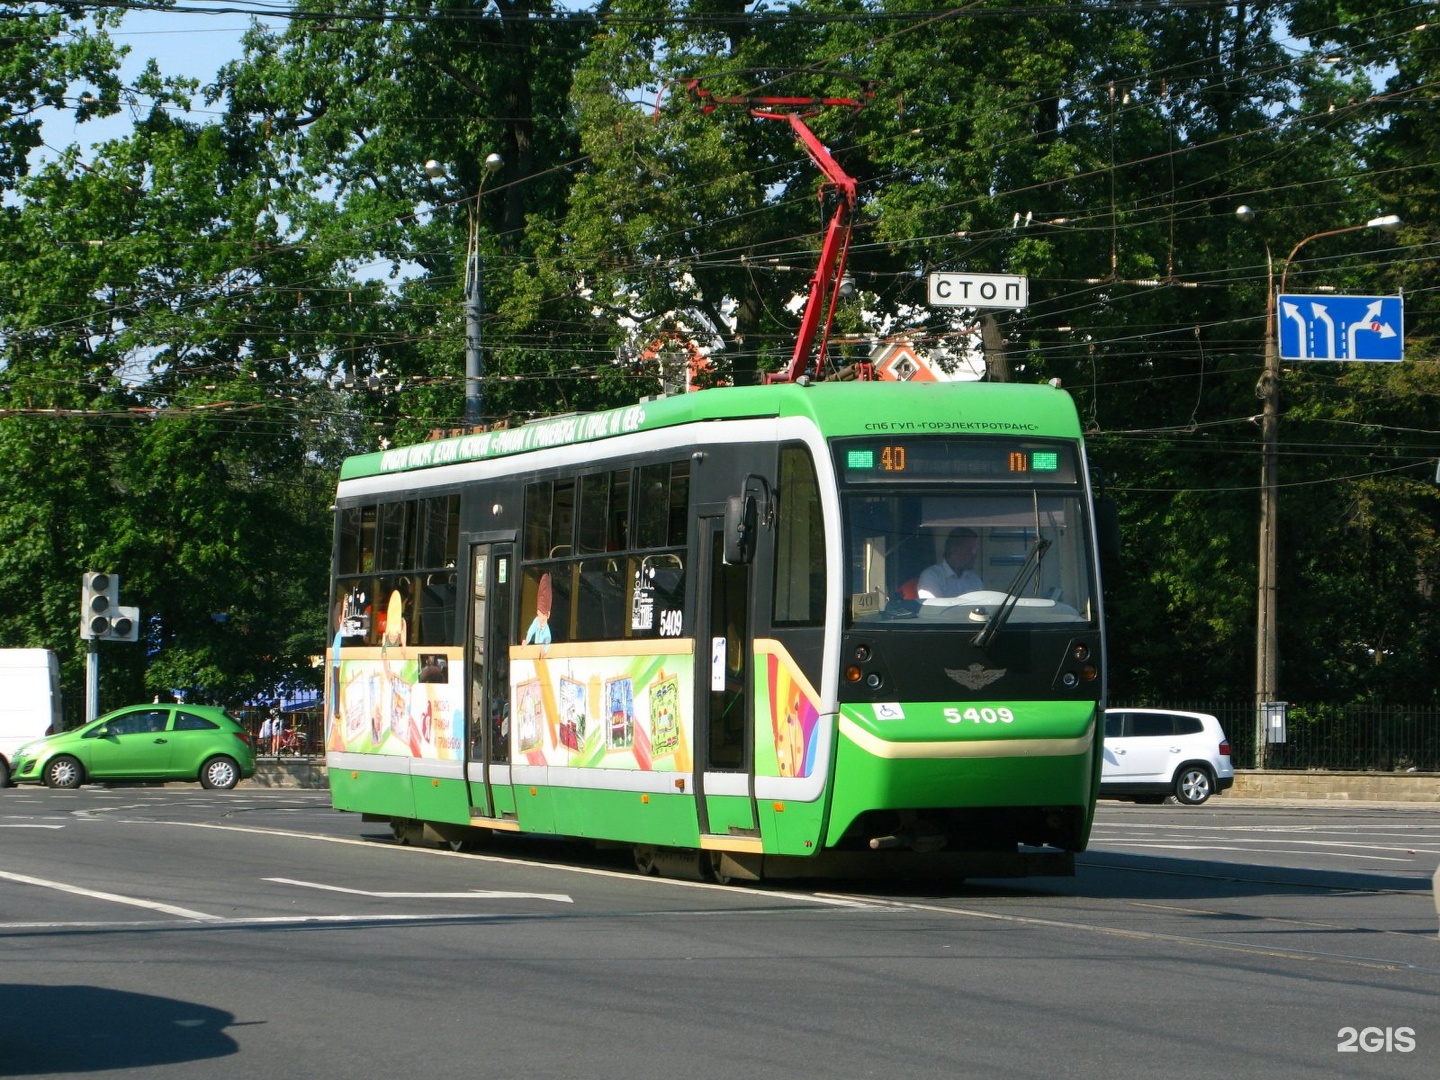 Маршрут трамвая 40 санкт